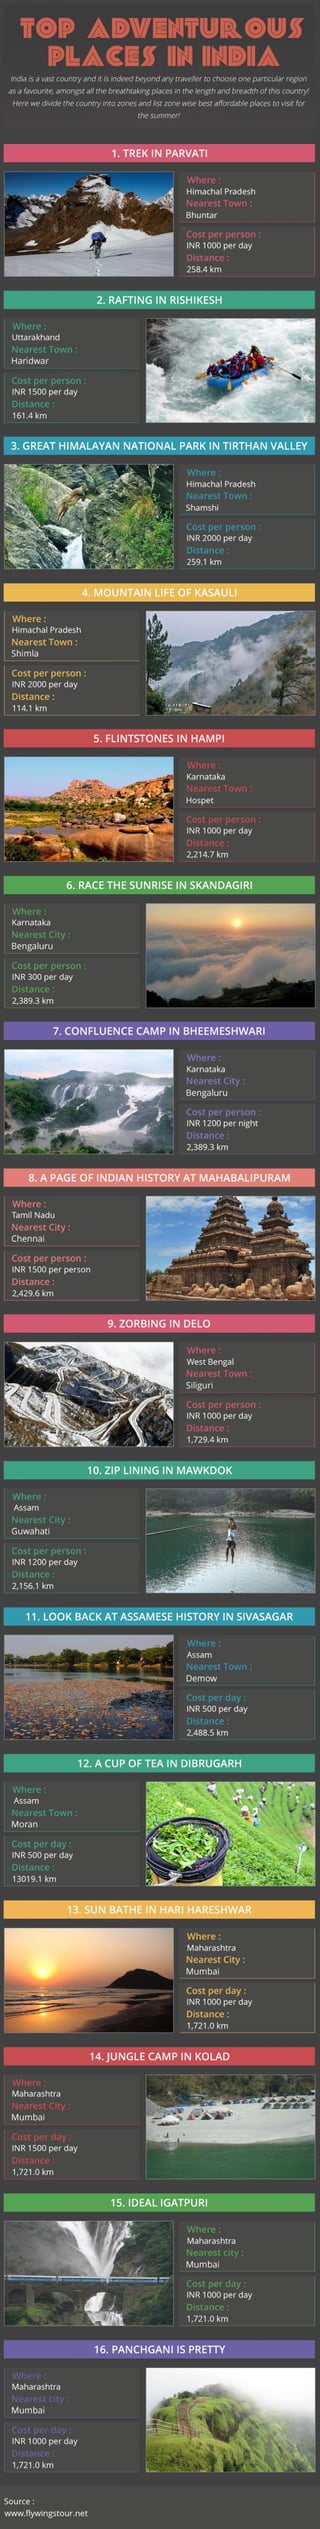 Top Adventurous Places in India